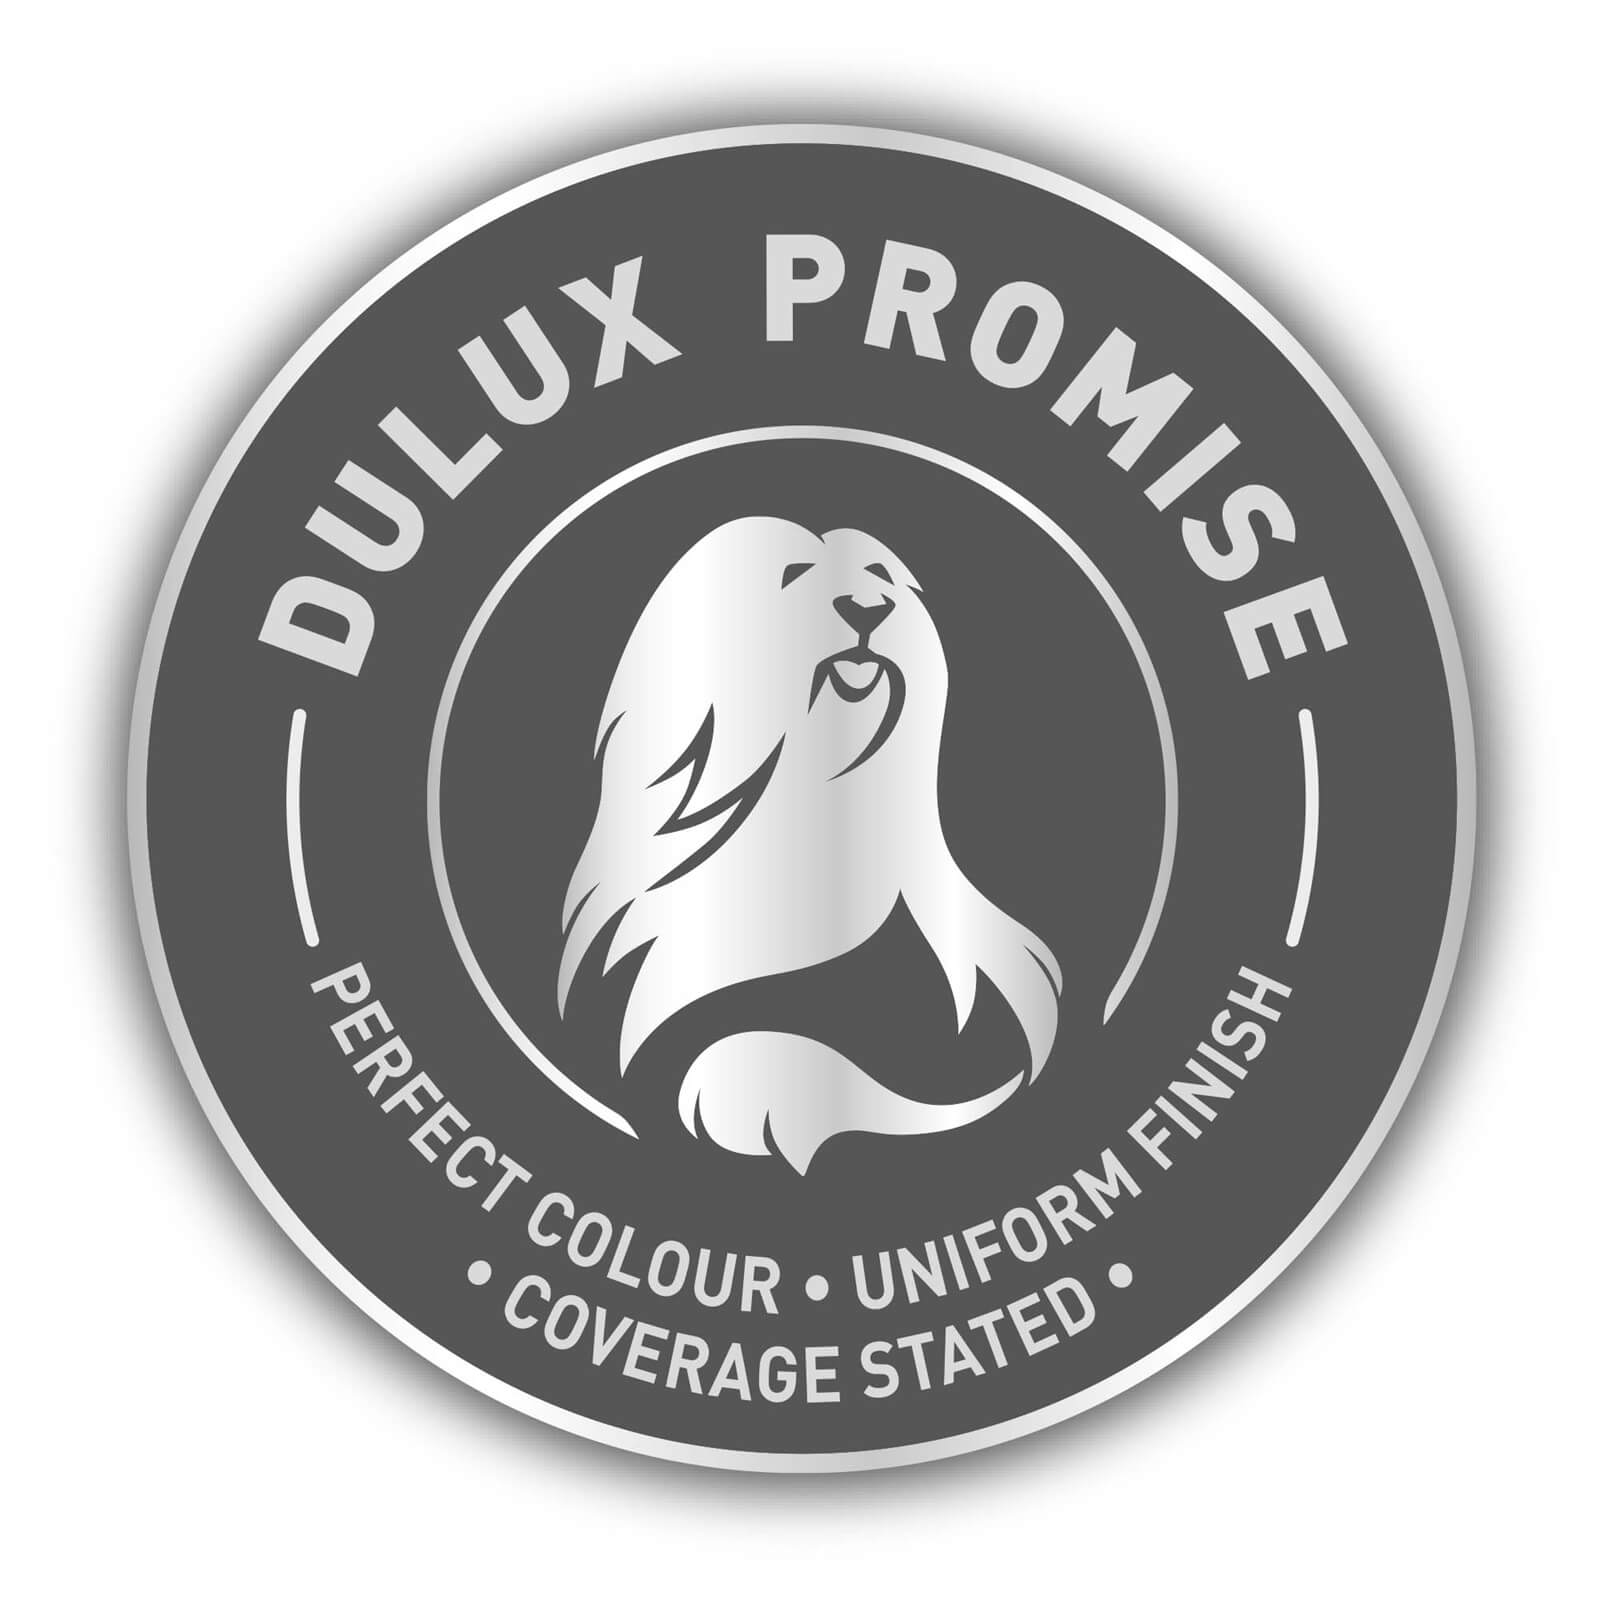 Dulux Natural Hints Silk Emulsion Paint Nutmeg White - 5L